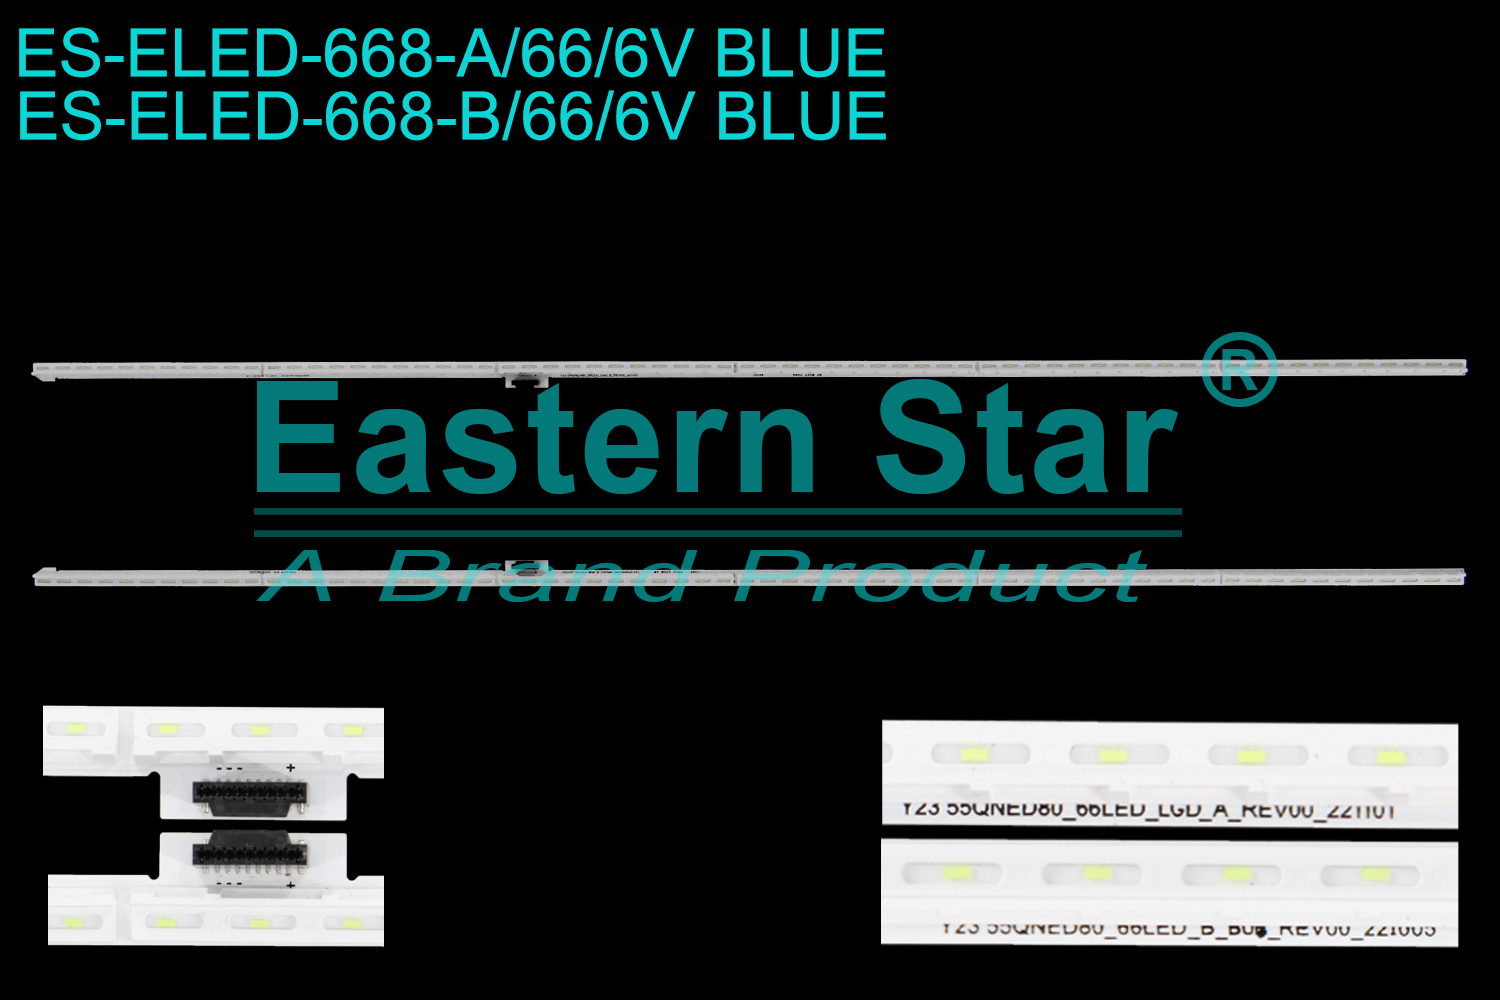 ES-ELED-668 ELED/EDGE TV backlight use for 55'' Lg A: 10246 Y23 55QNED80_66LED_LGD_A_REV00_221101 R802 25UM 2W B45224 51  B: 11089 Y23 55QNED80_66LED_LGD_B_REV00_221005 R802 25UM 2W YW0324 54 LED STRIPS(/)